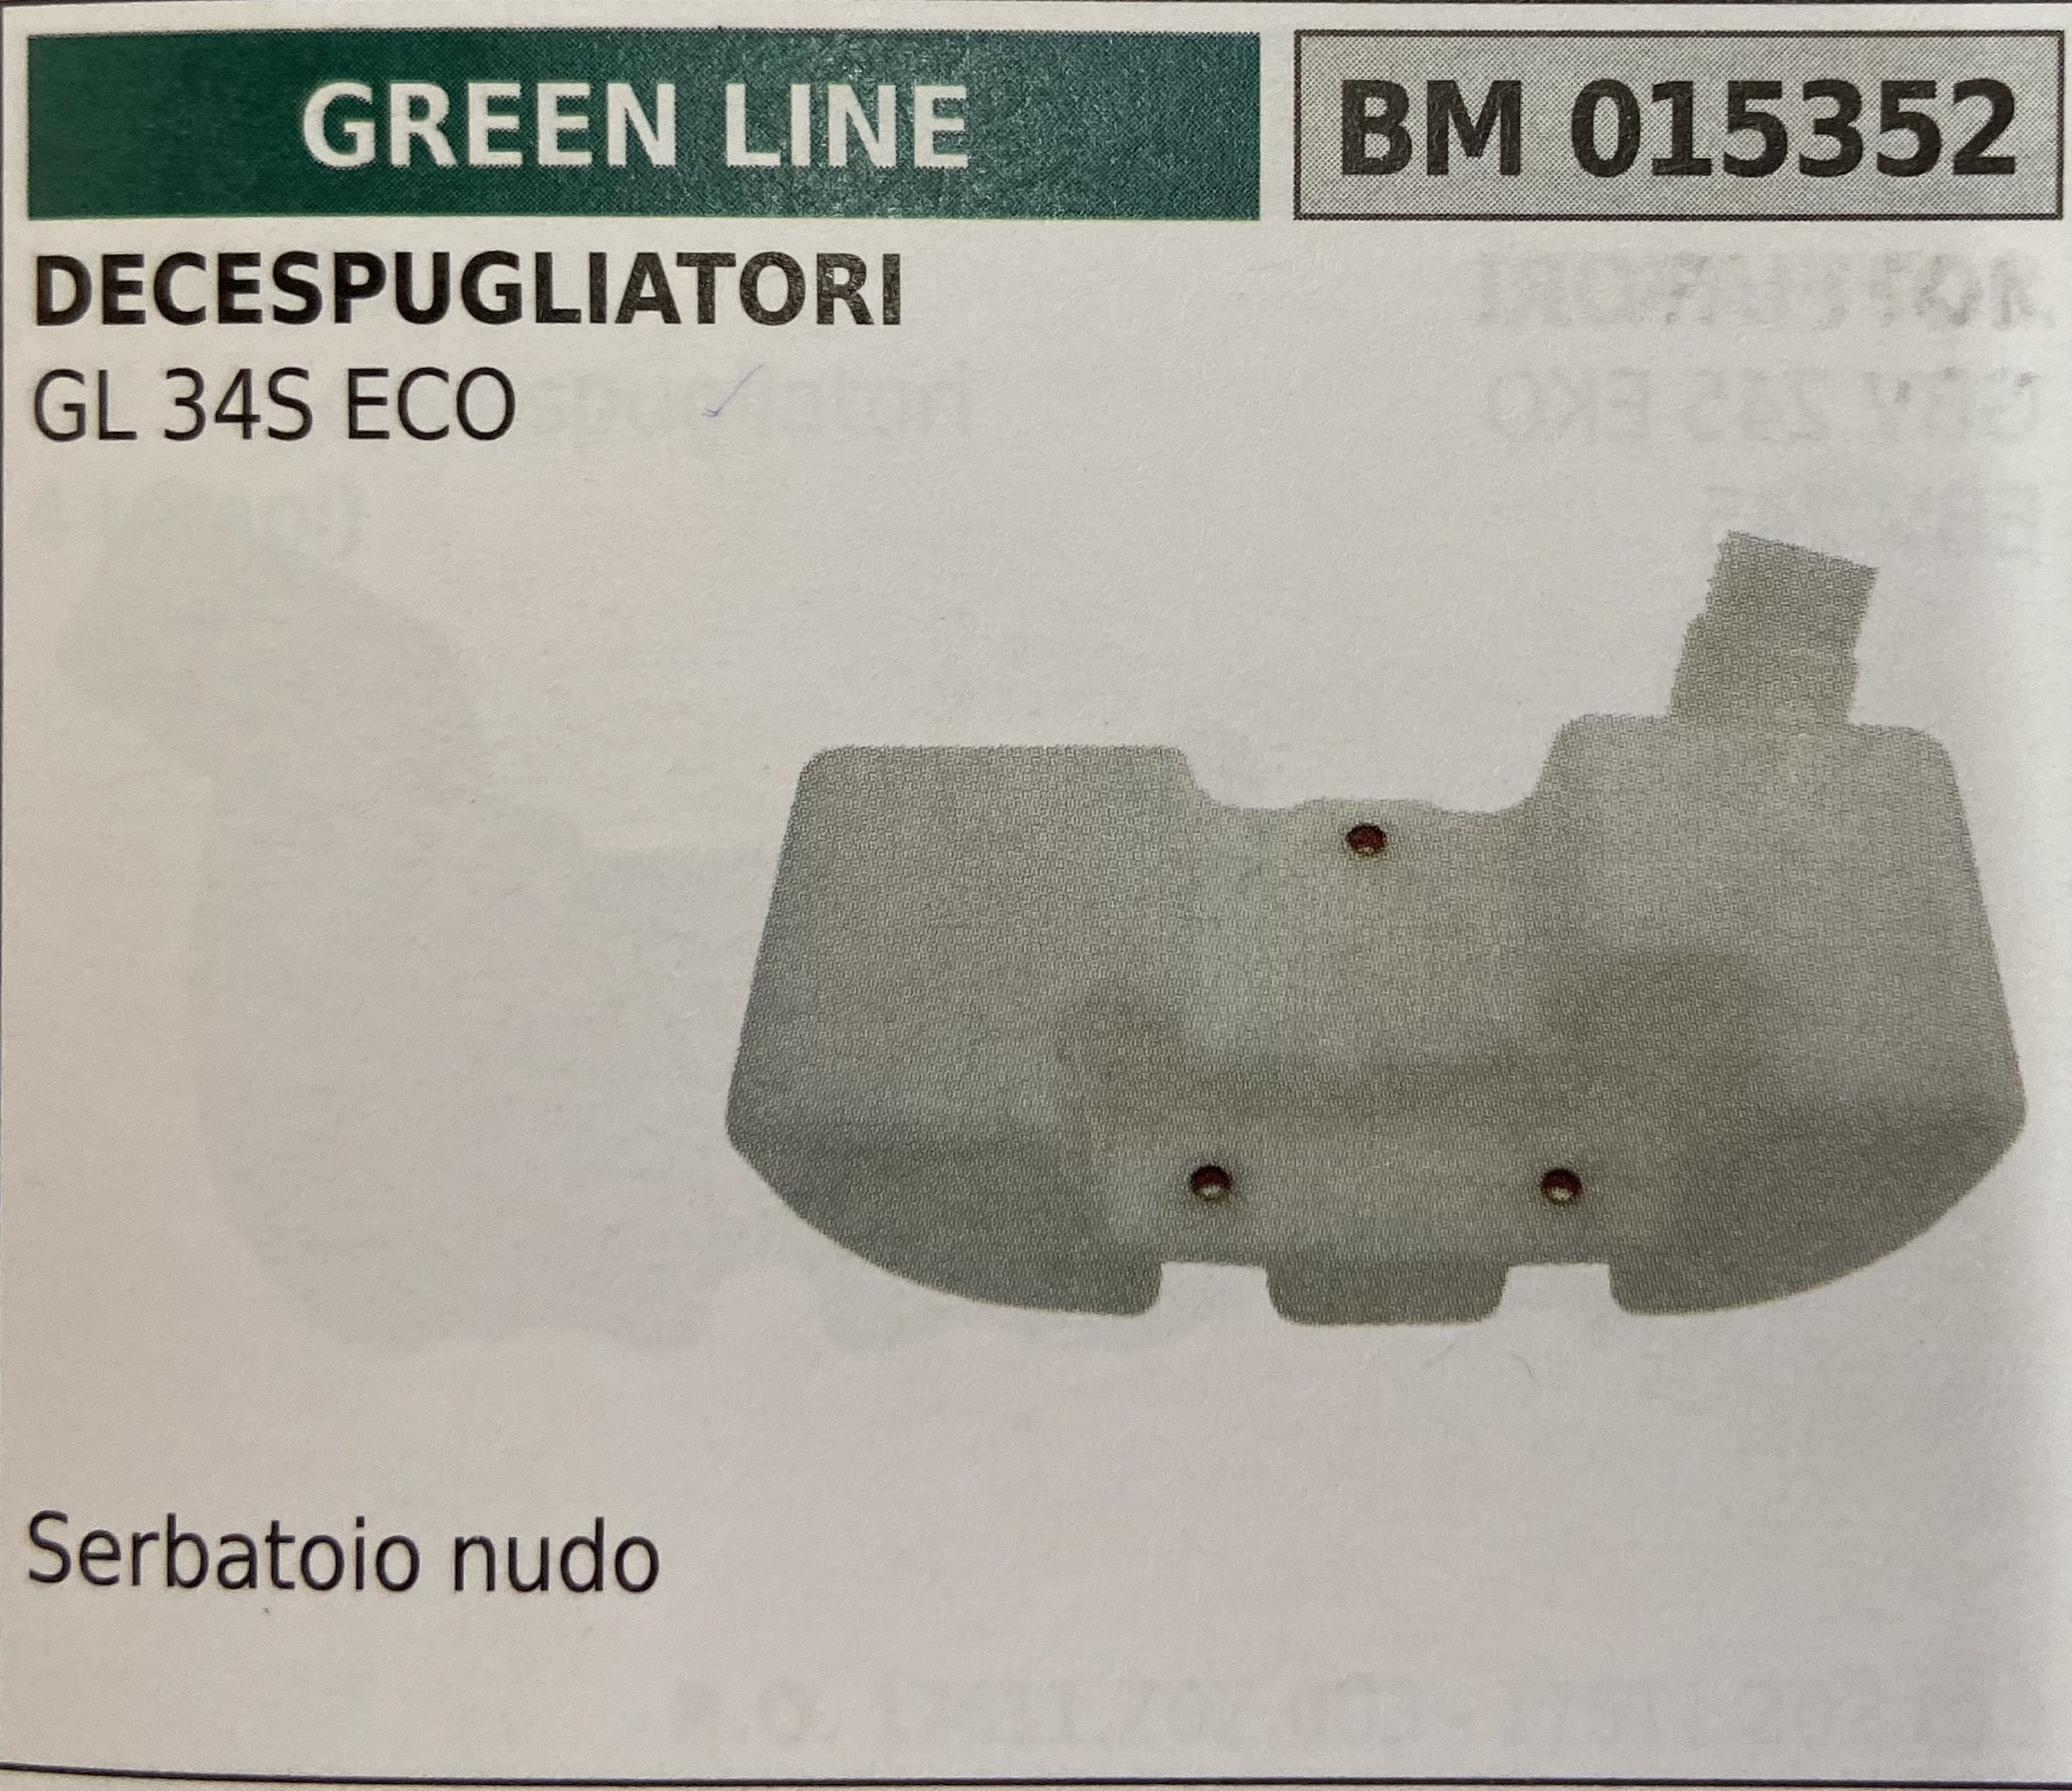 BRUMAR SERBATOIO GREEN LINE DECESPUGLIATORI GL 34S ECO  Serbatoio nudo